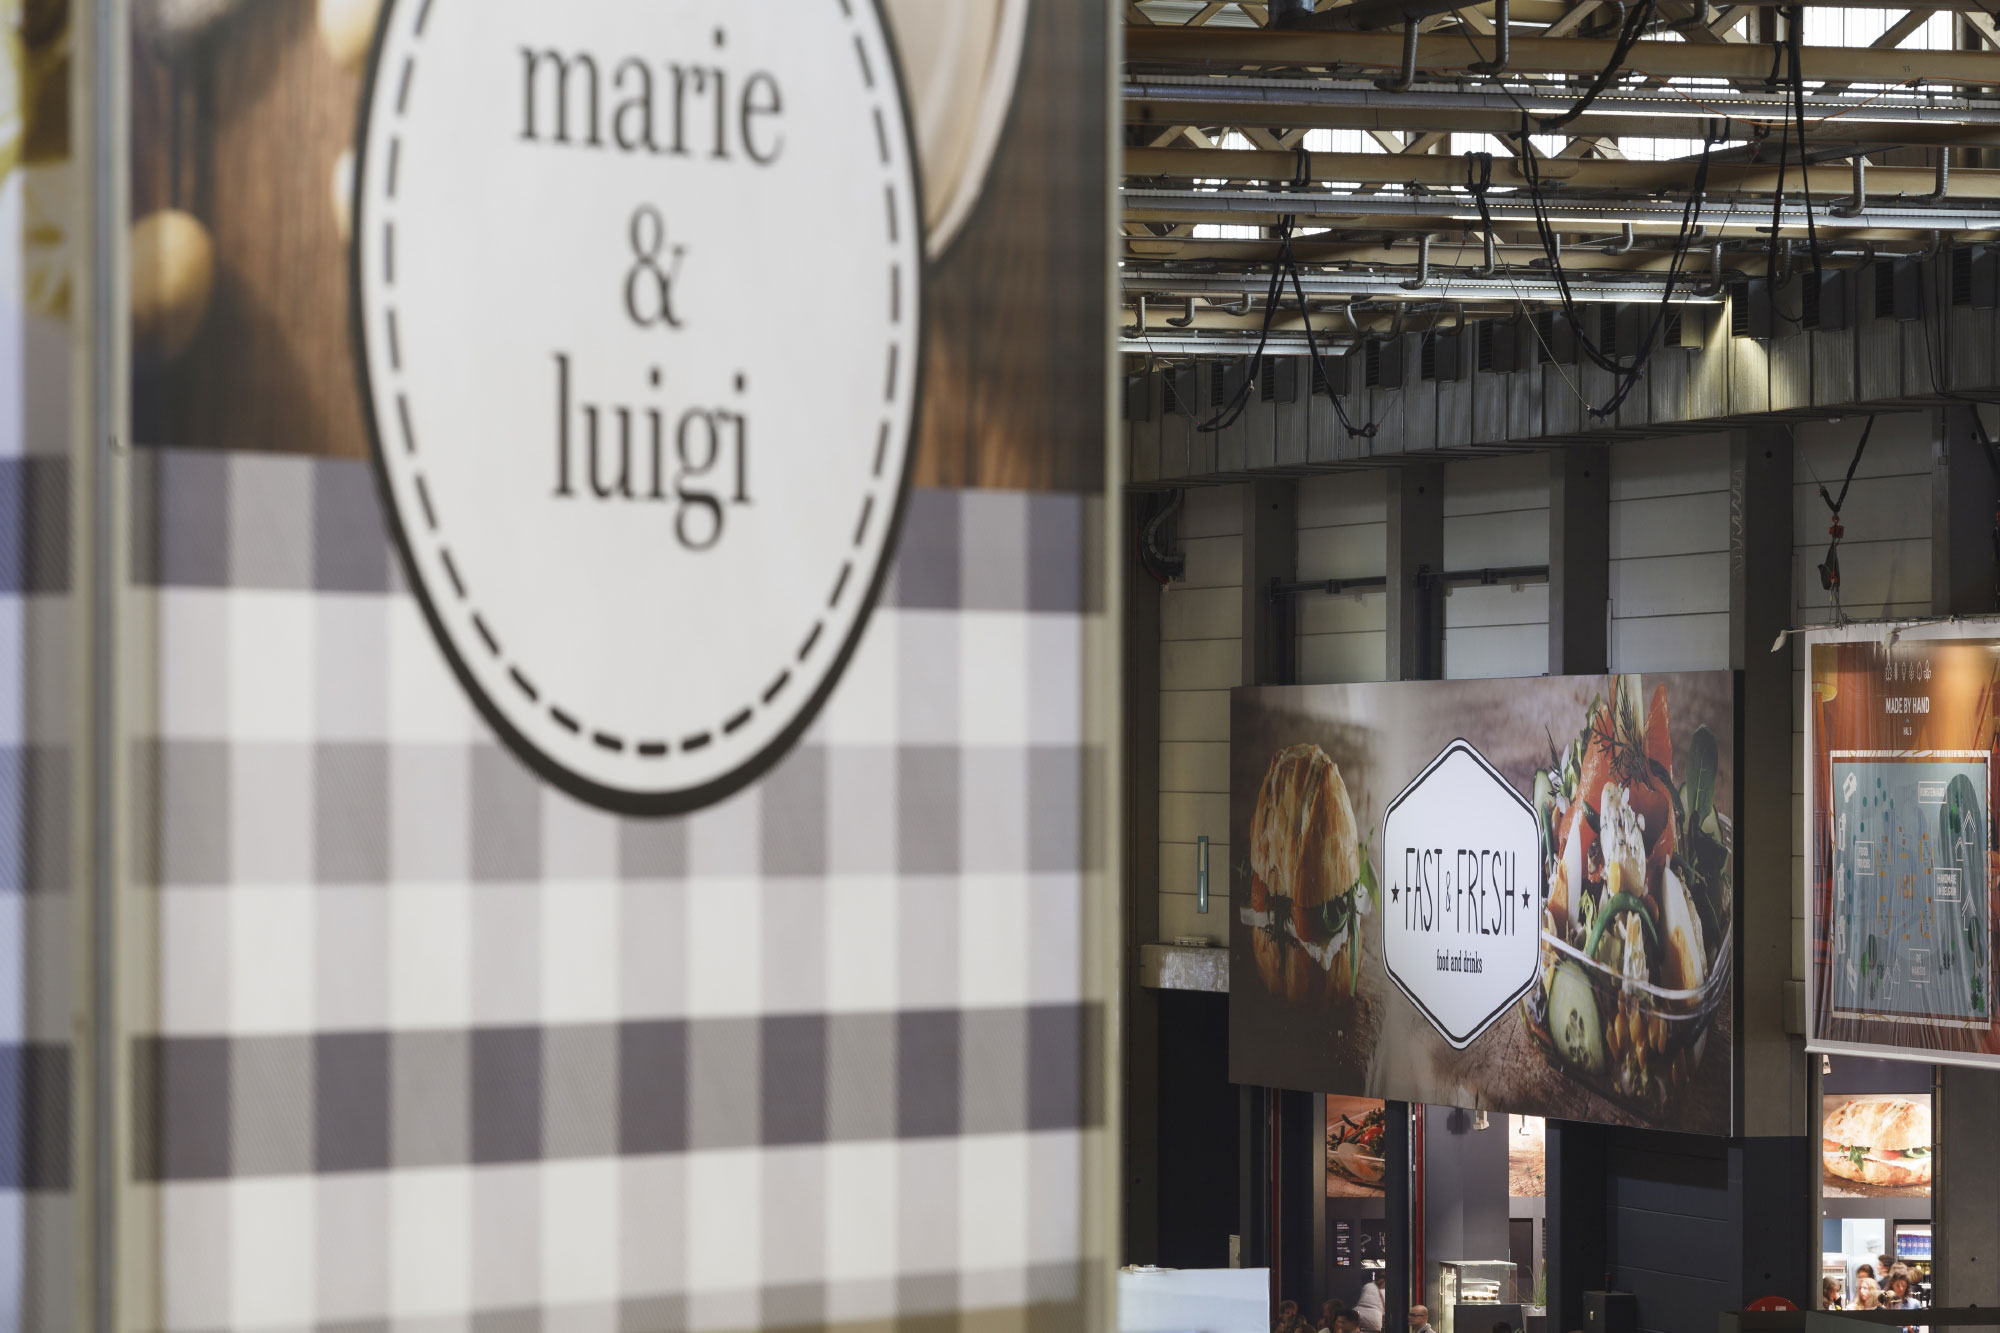 Brasserie Marie & Luigi - Retail